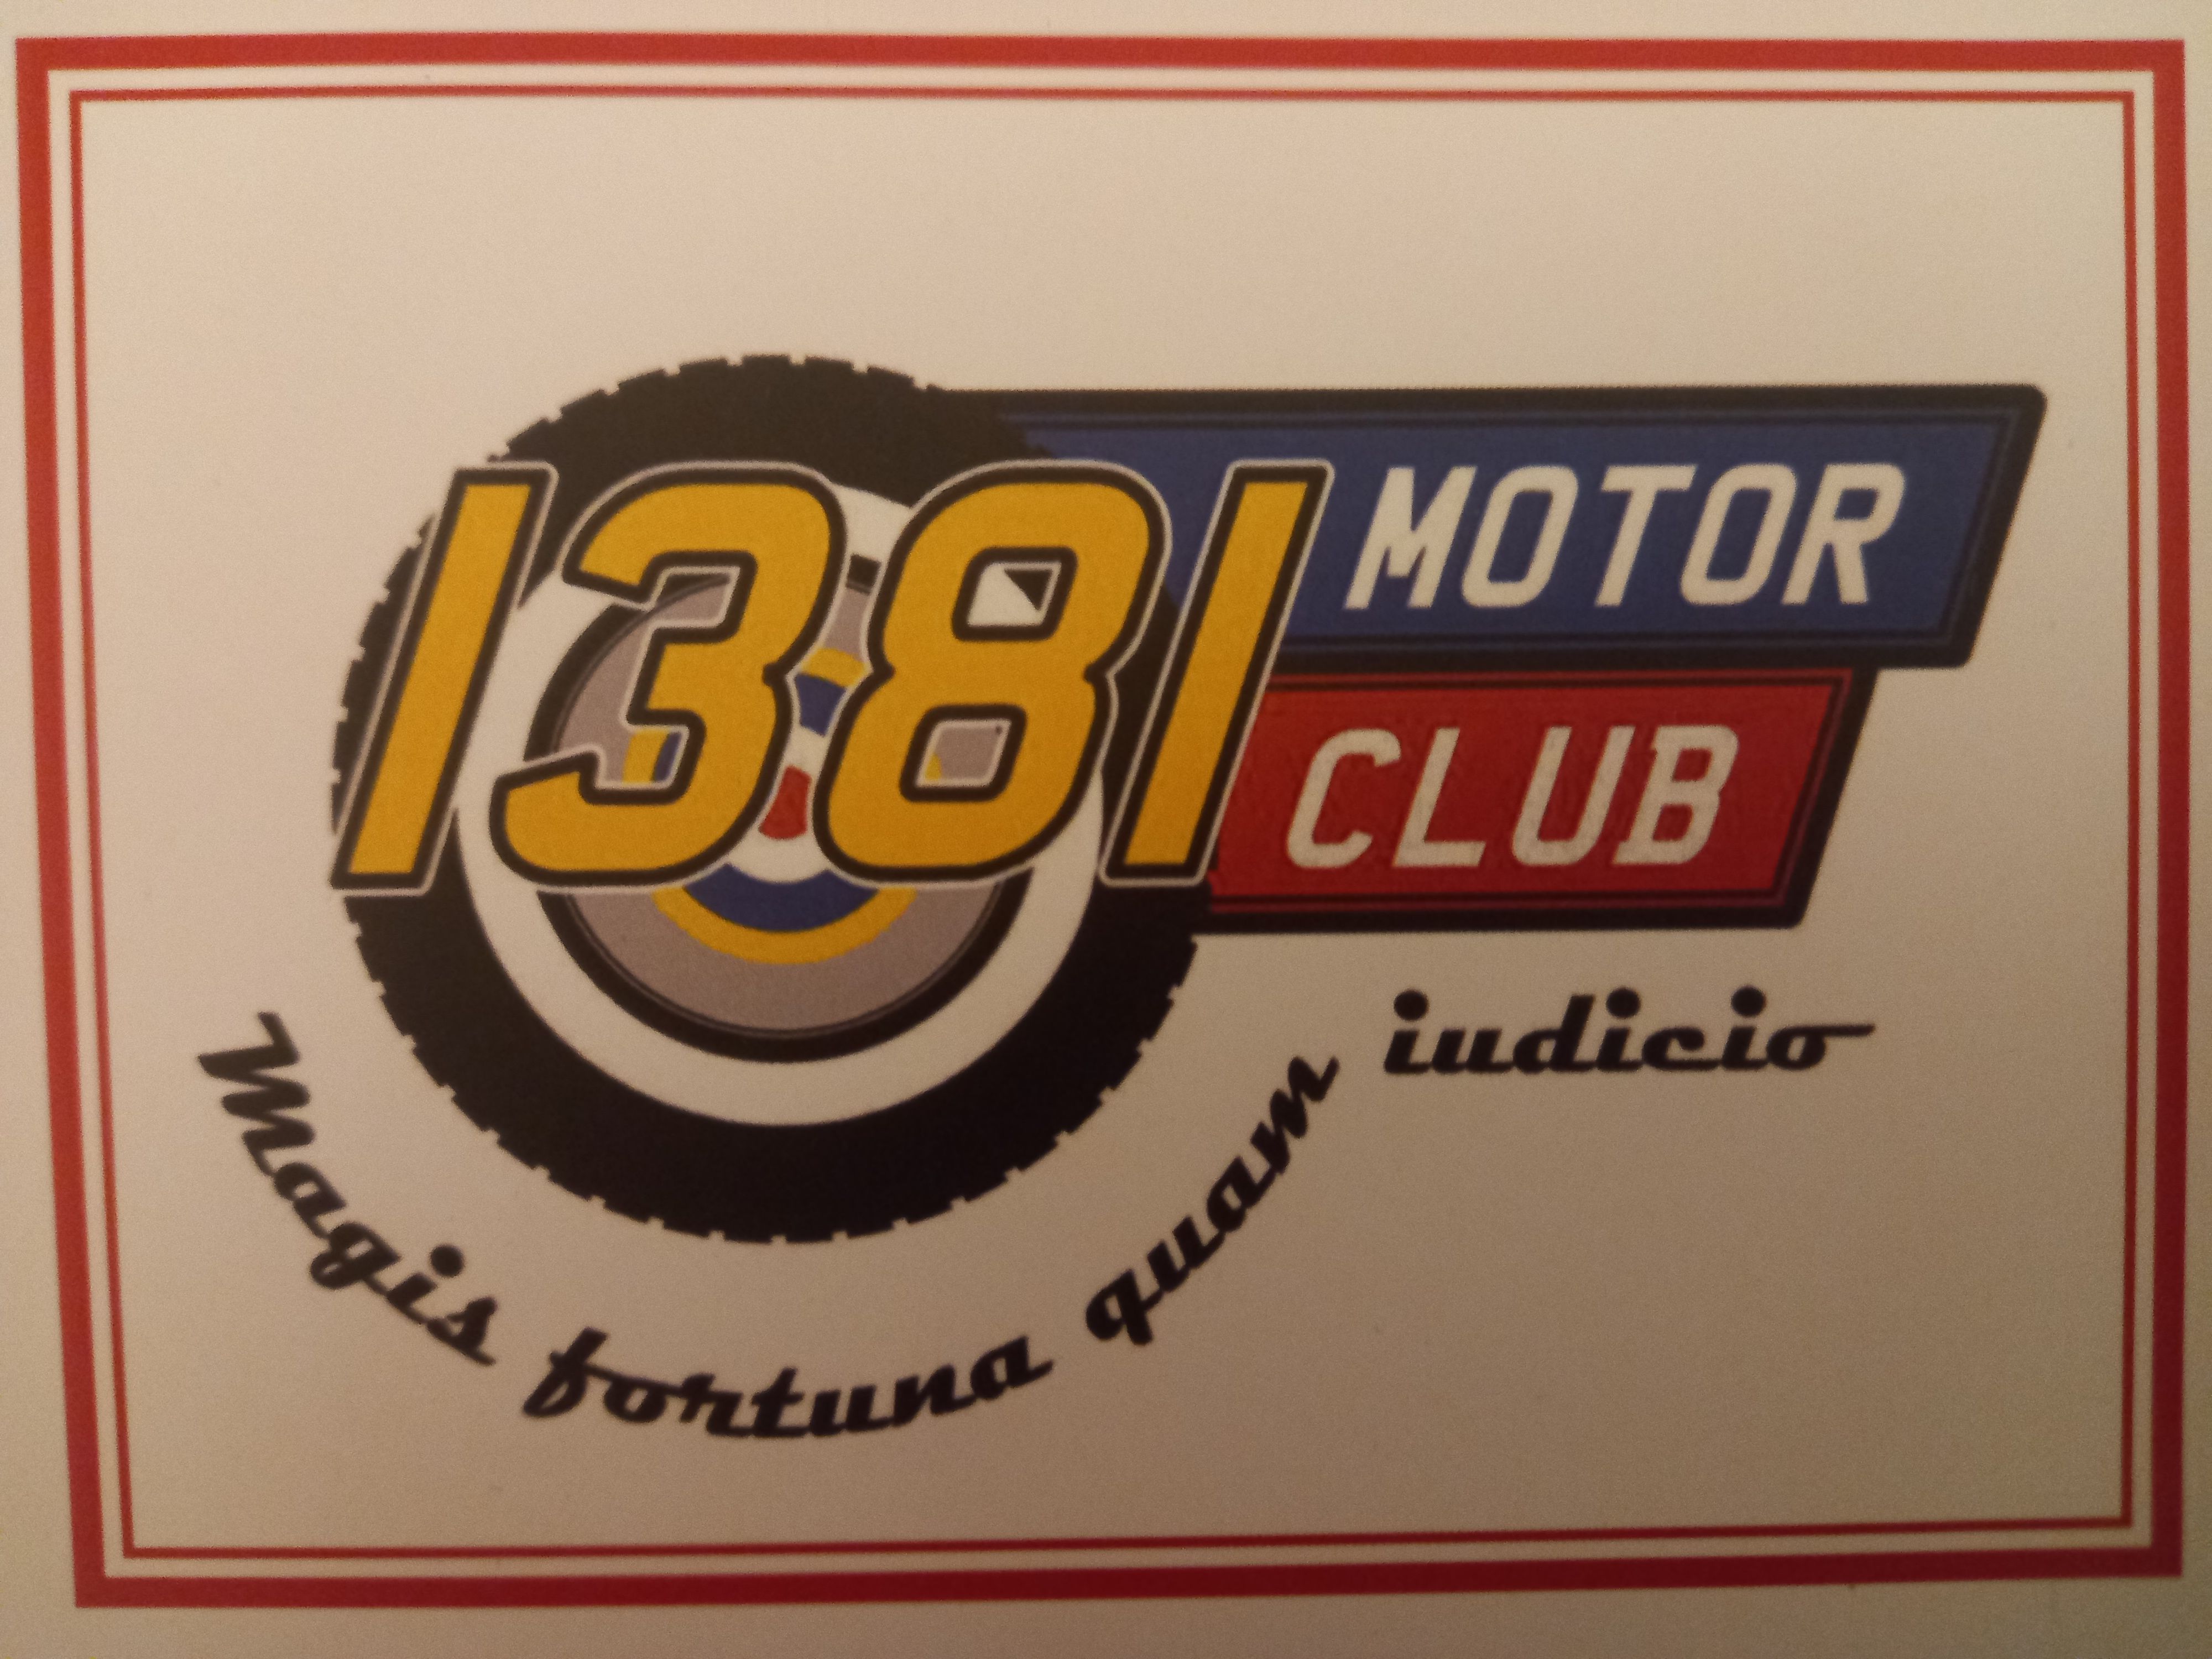 1381 Motor Club